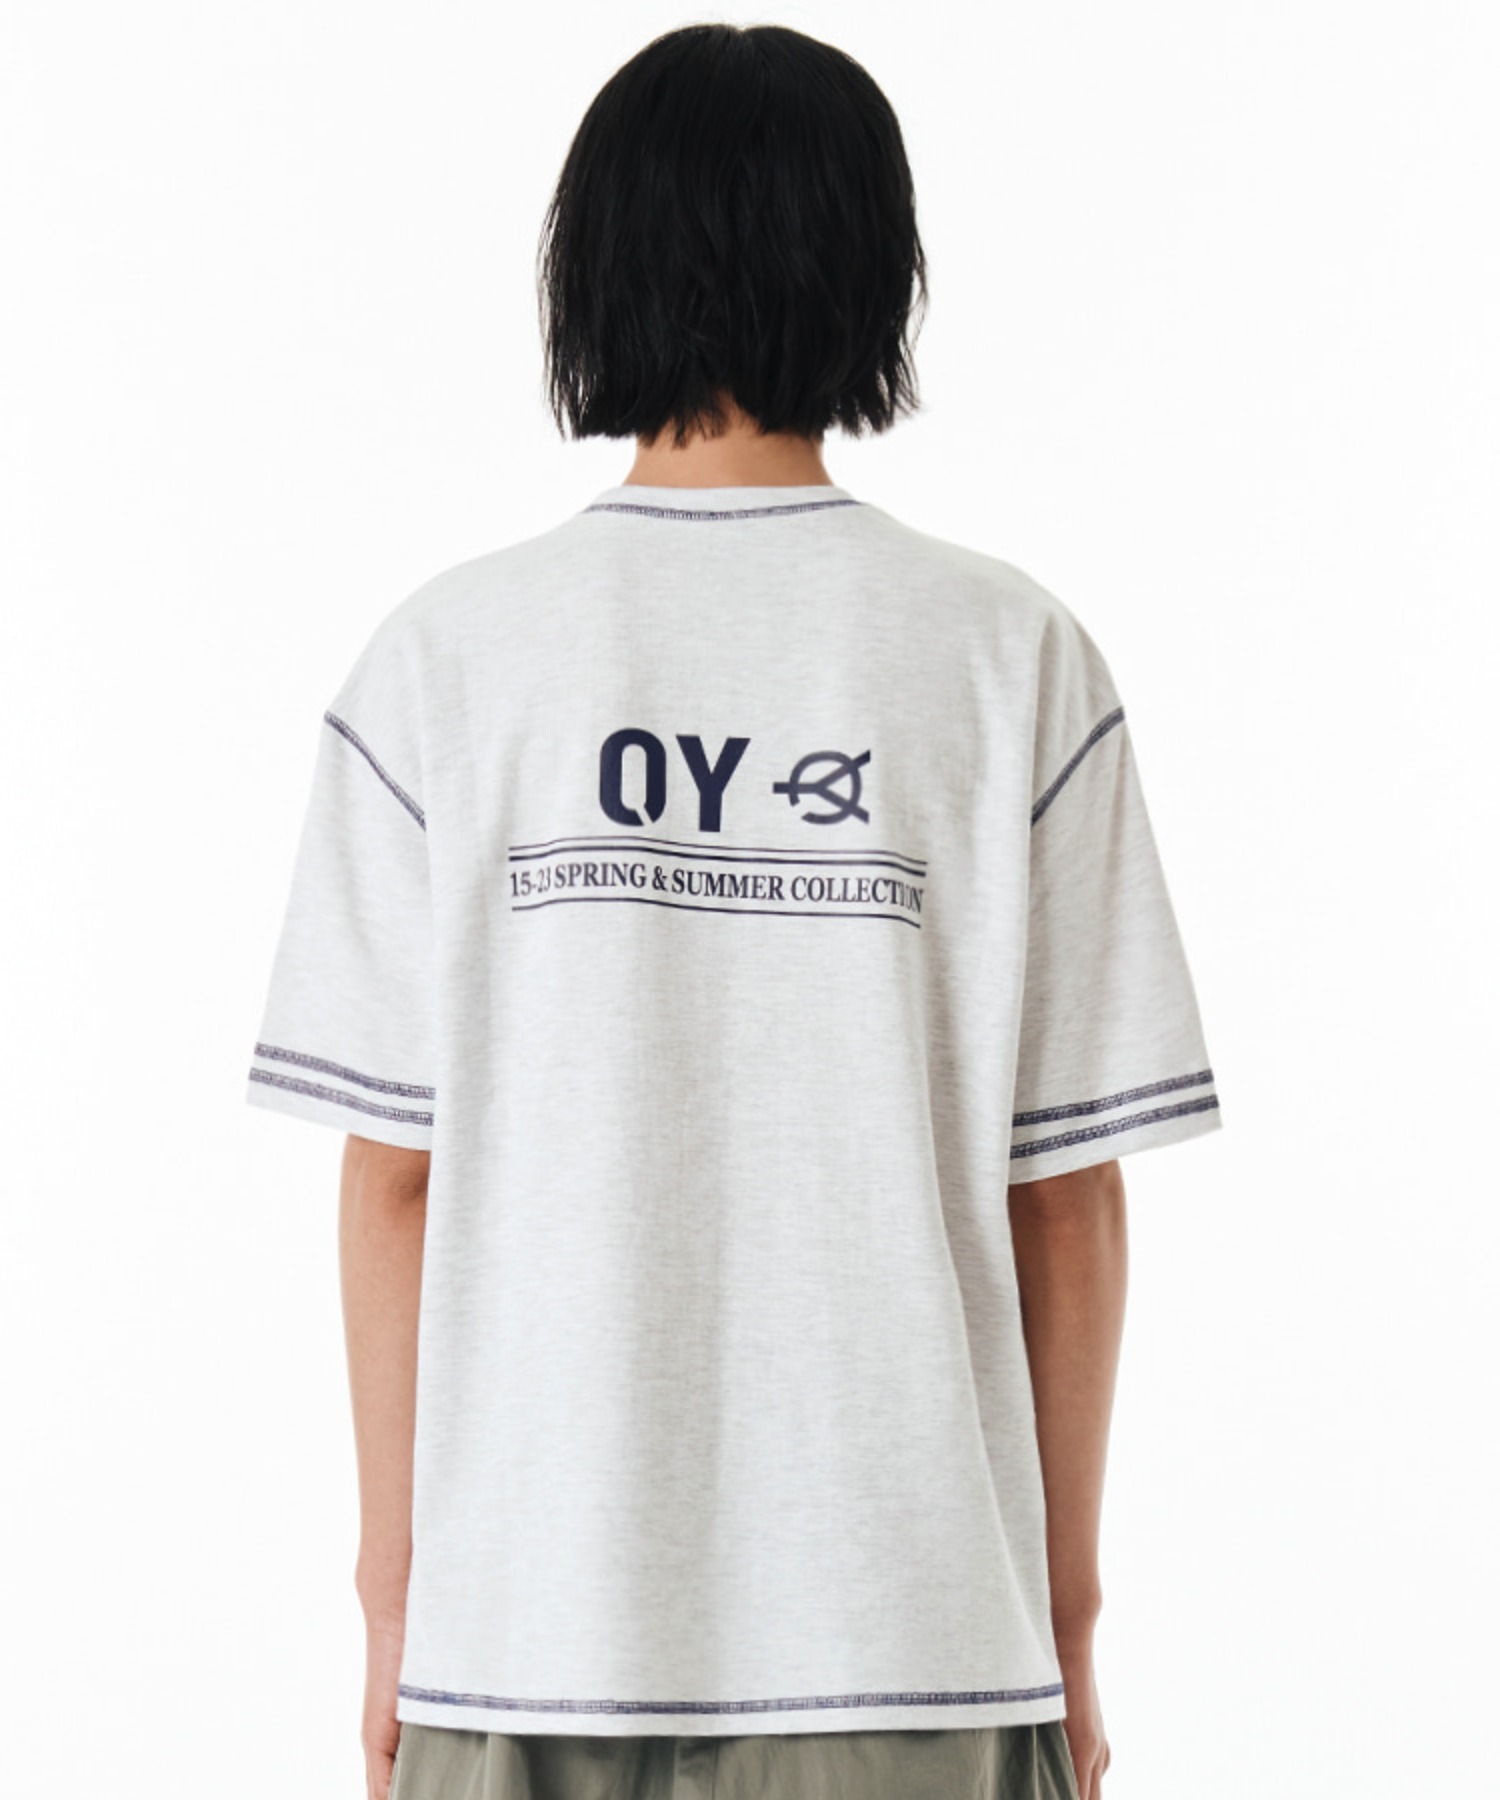 OY Tシャツ - トップス